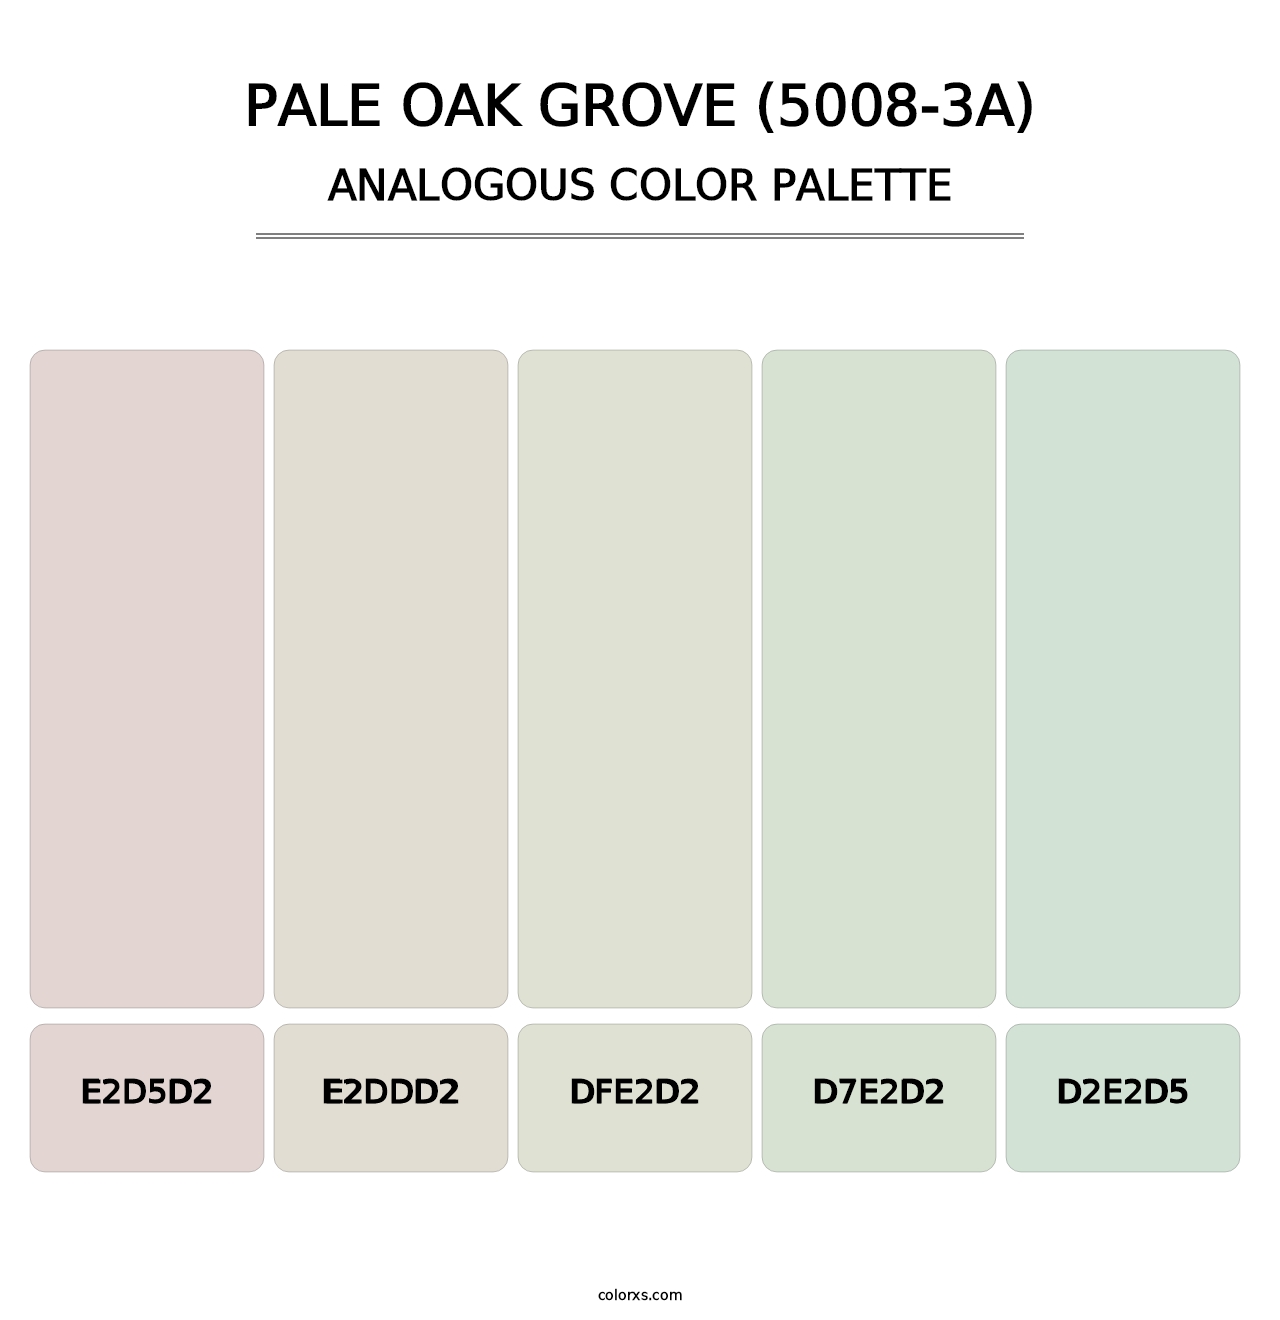 Pale Oak Grove (5008-3A) - Analogous Color Palette